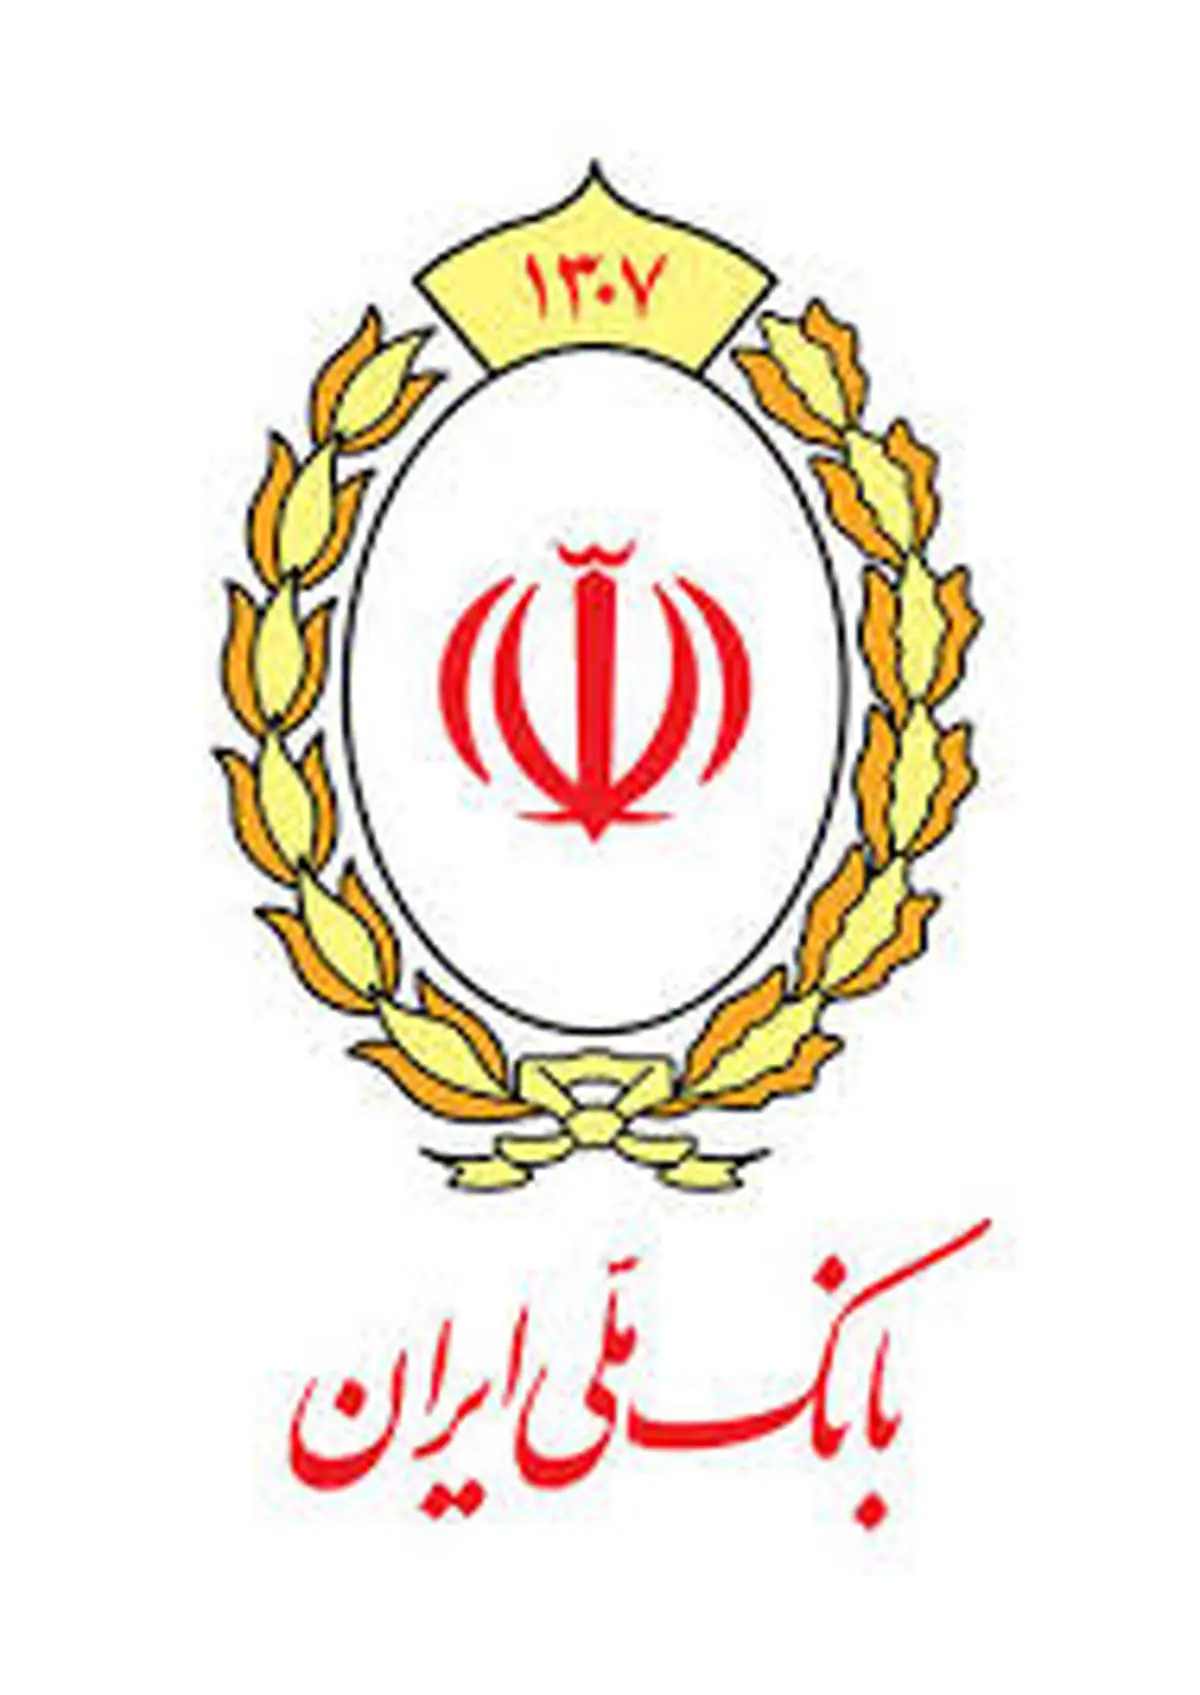 چتر حمایتی بانک ملی ایران بر سر گروه های هدف سازمان های حمایتی

